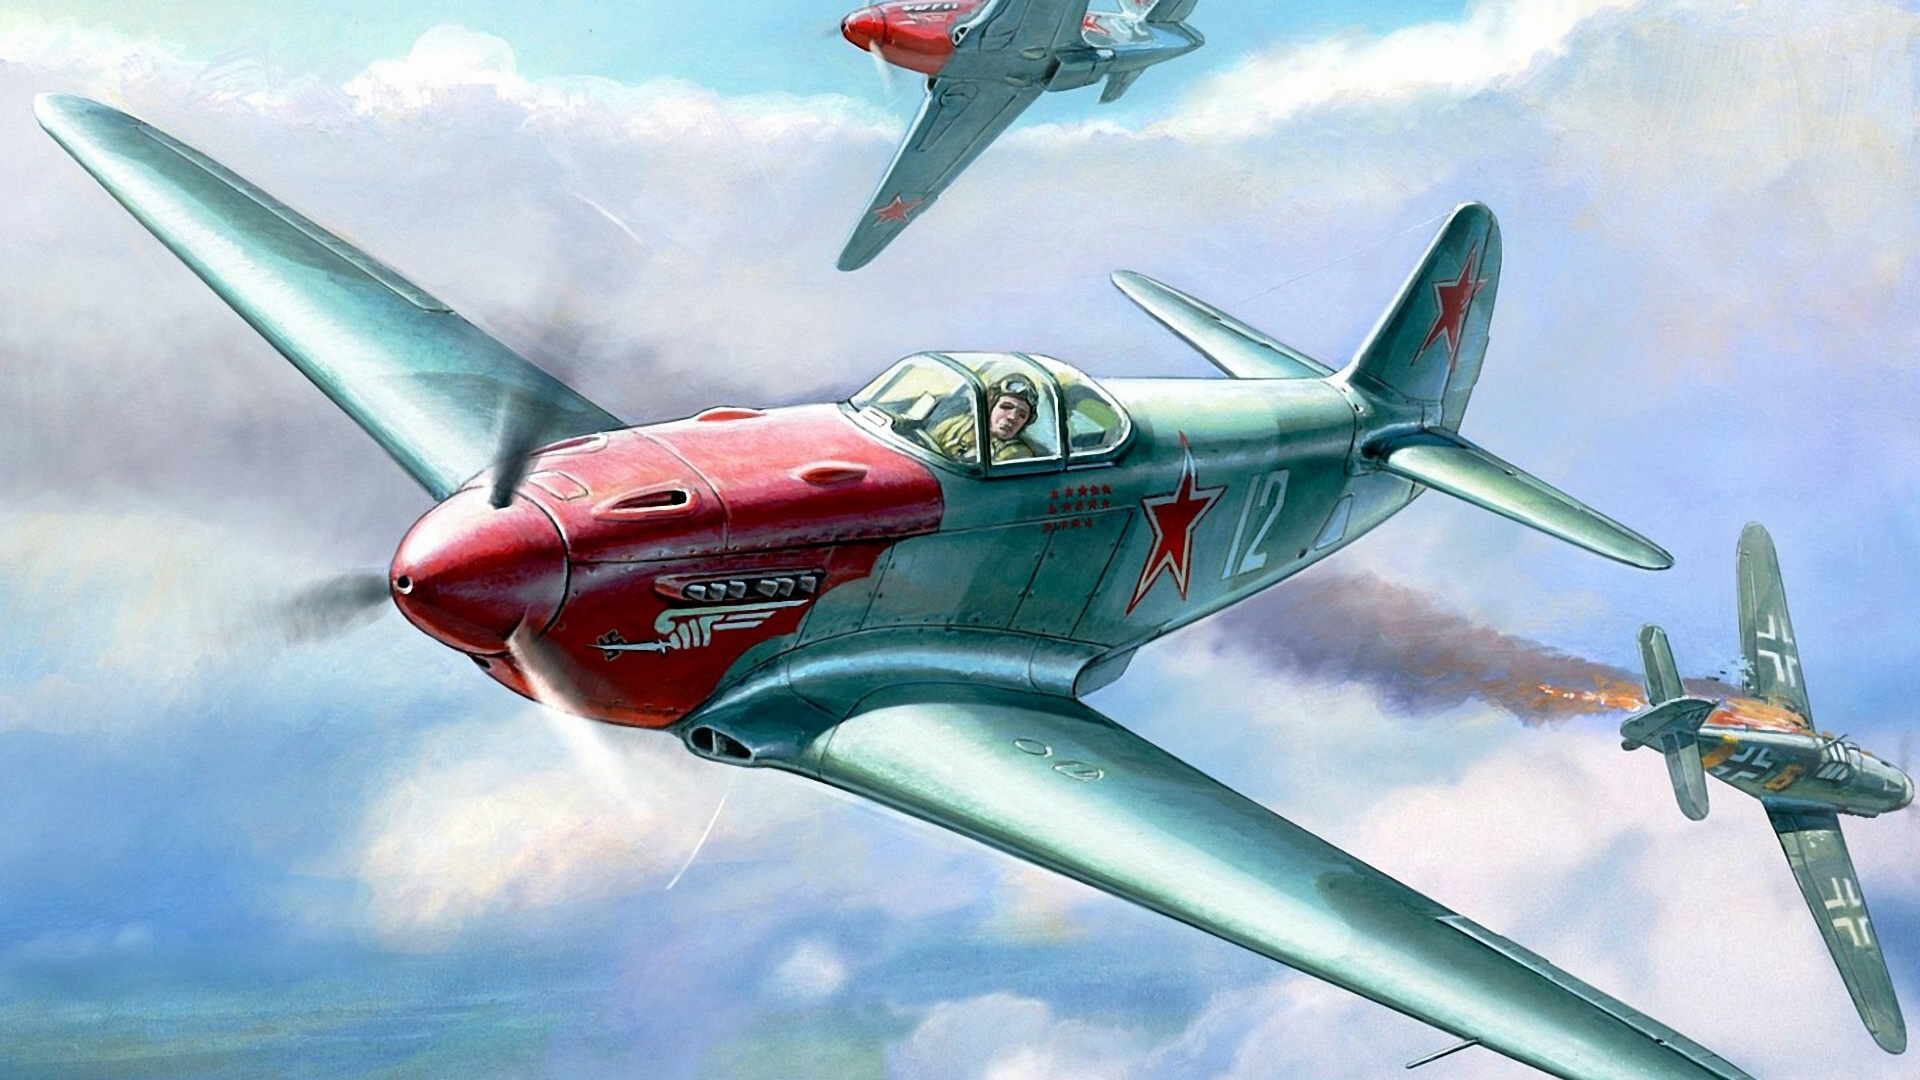 航空, 螺旋桨, 军用飞机, 雅科夫列夫牦牛9, 飞机发动机 壁纸 1920x1080 允许